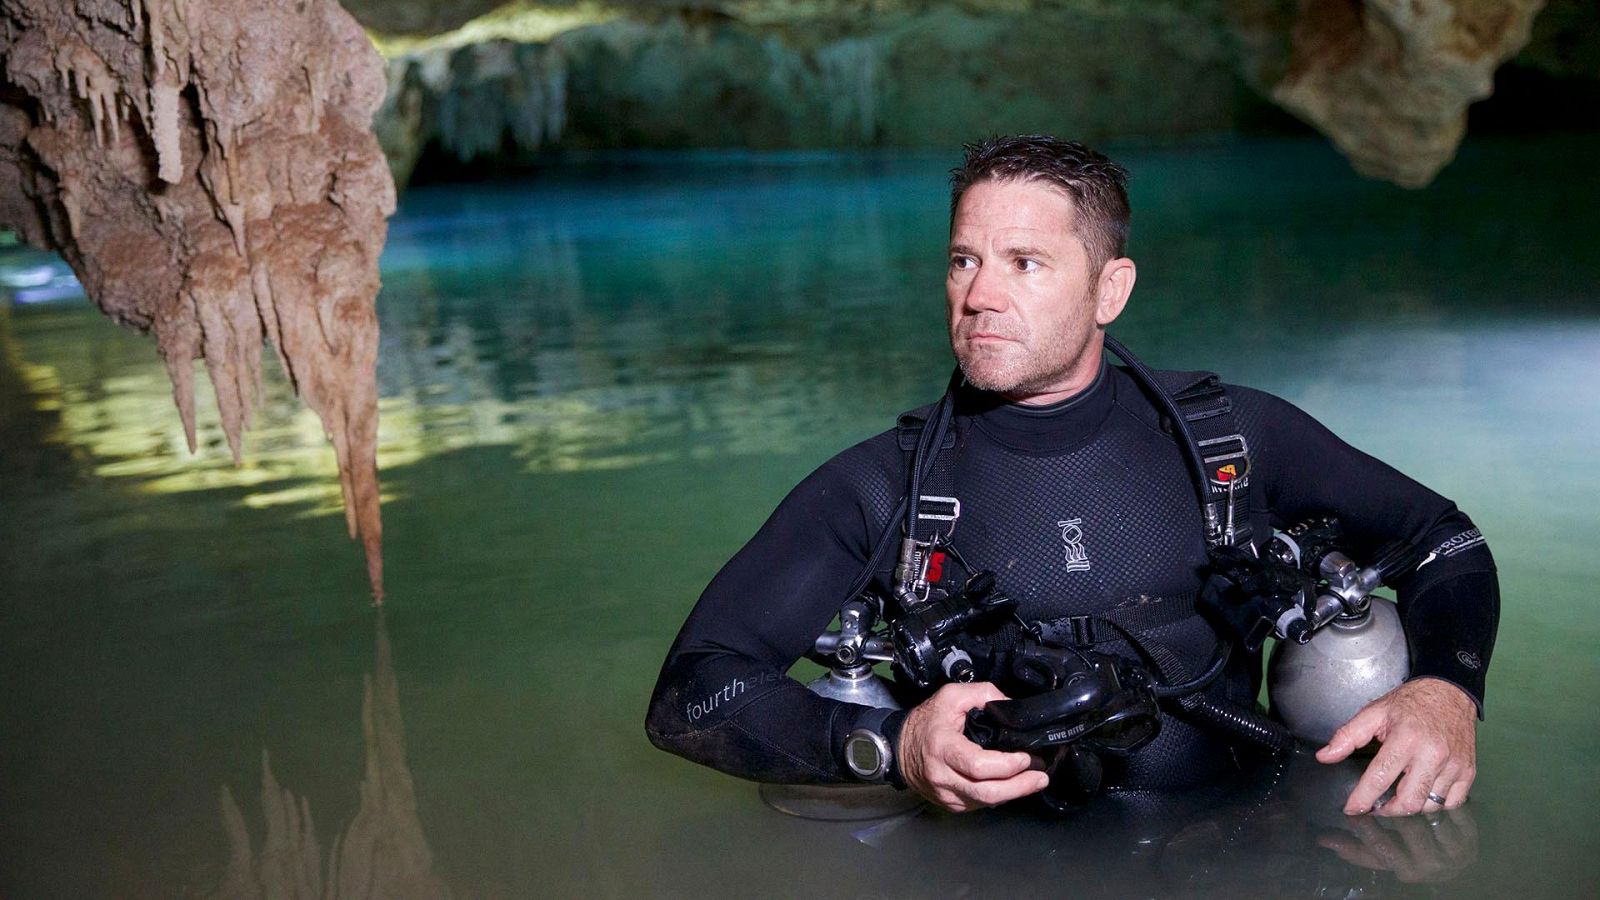 Expedición con Steve Backshall - Episodio 3: Méjico, cuevas inundadas - Documental en RTVE